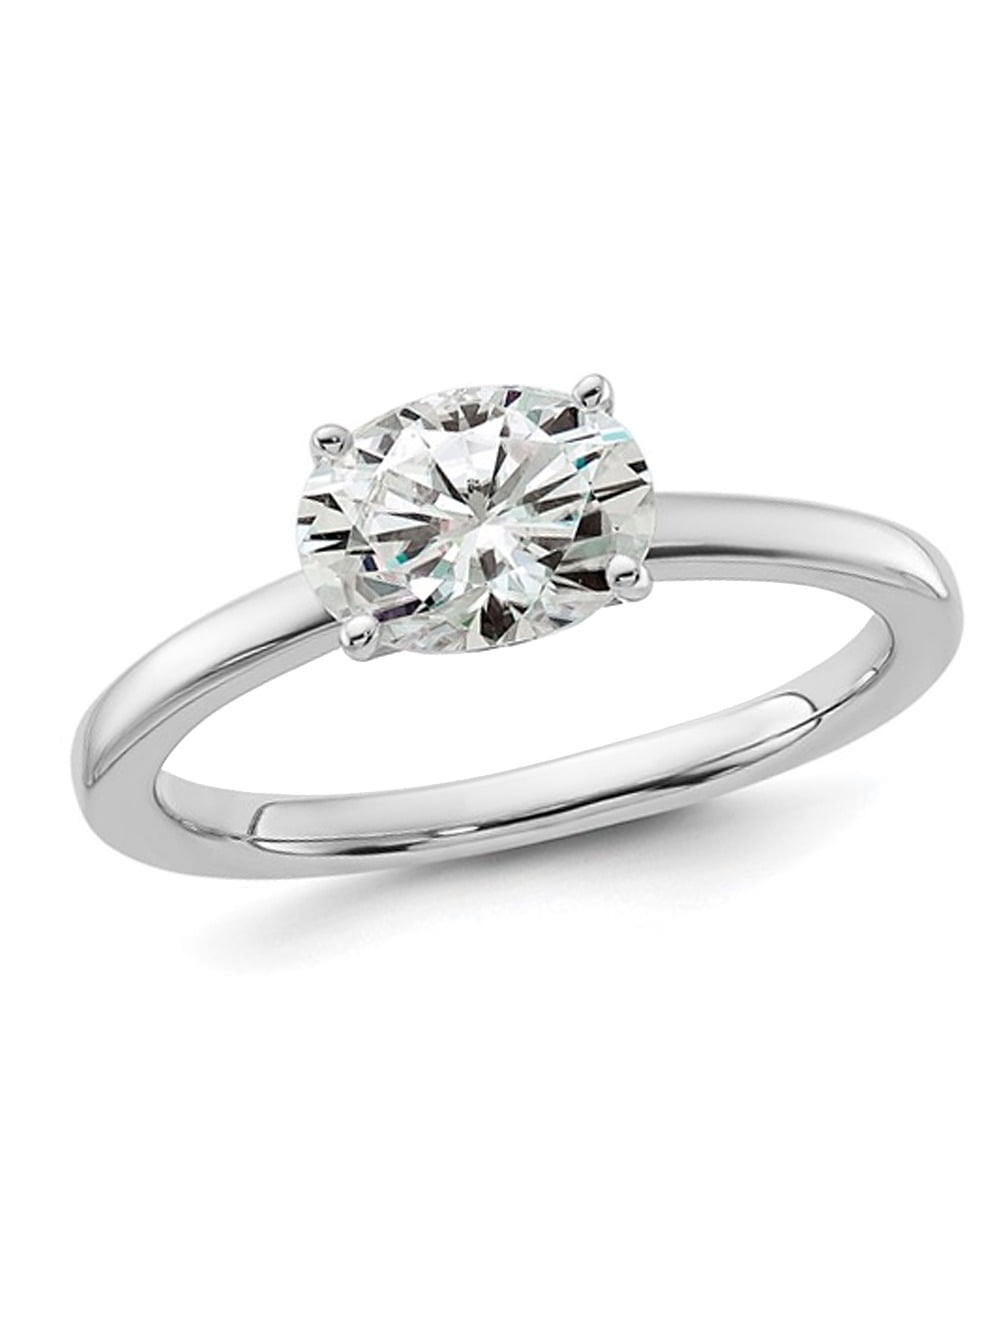 3 CT East West Oval Bezel Set Moissanite Engagement Ring For Her 10k White  Gold | eBay